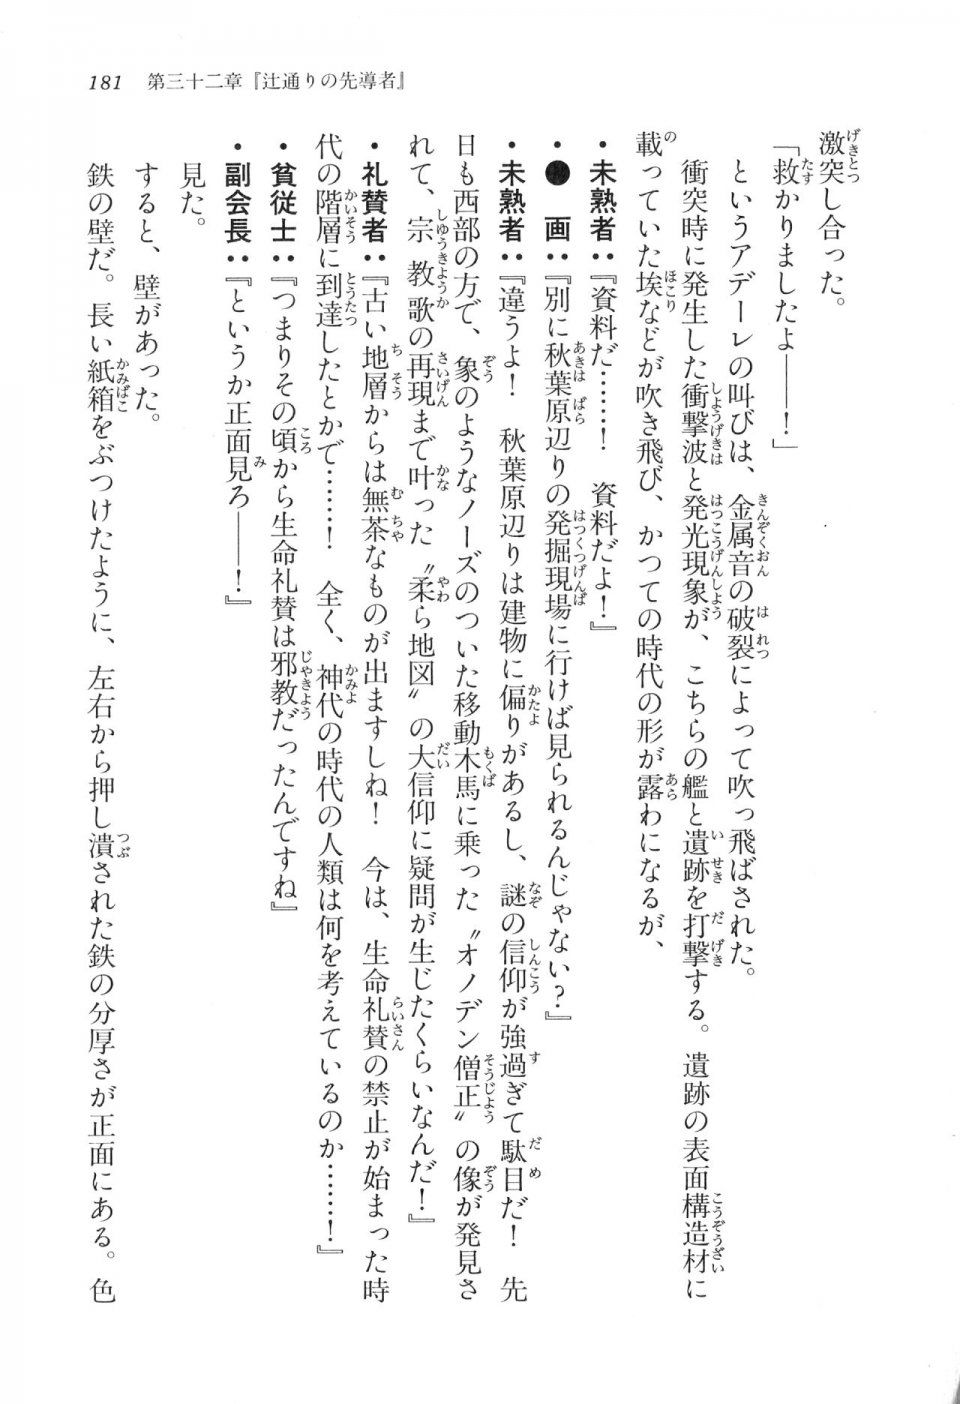 Kyoukai Senjou no Horizon LN Vol 17(7B) - Photo #181